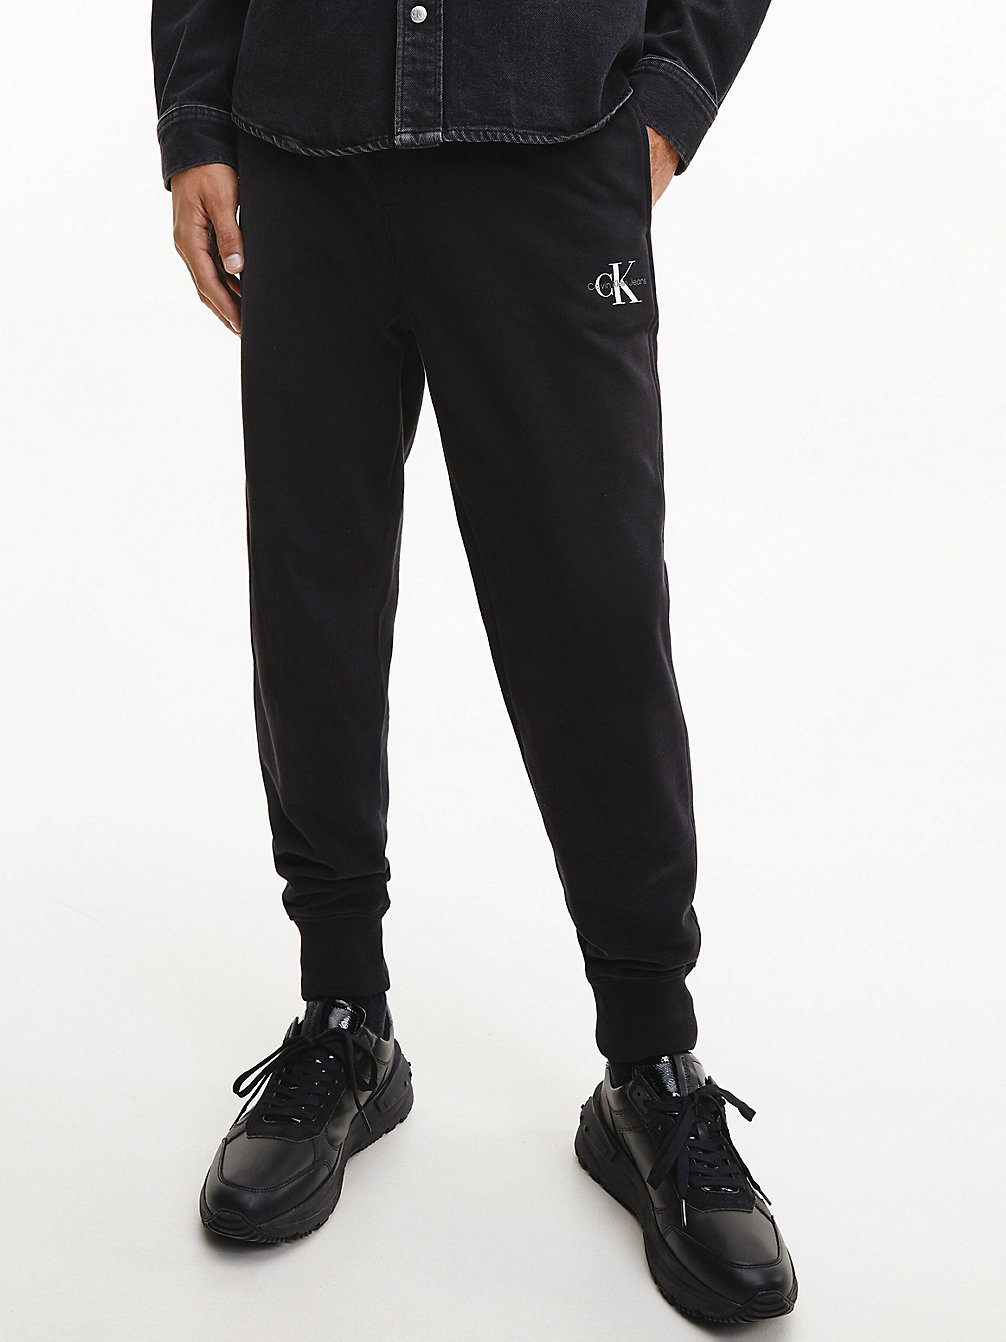 CK BLACK Pantalon De Jogging Avec Monogramme undefined hommes Calvin Klein